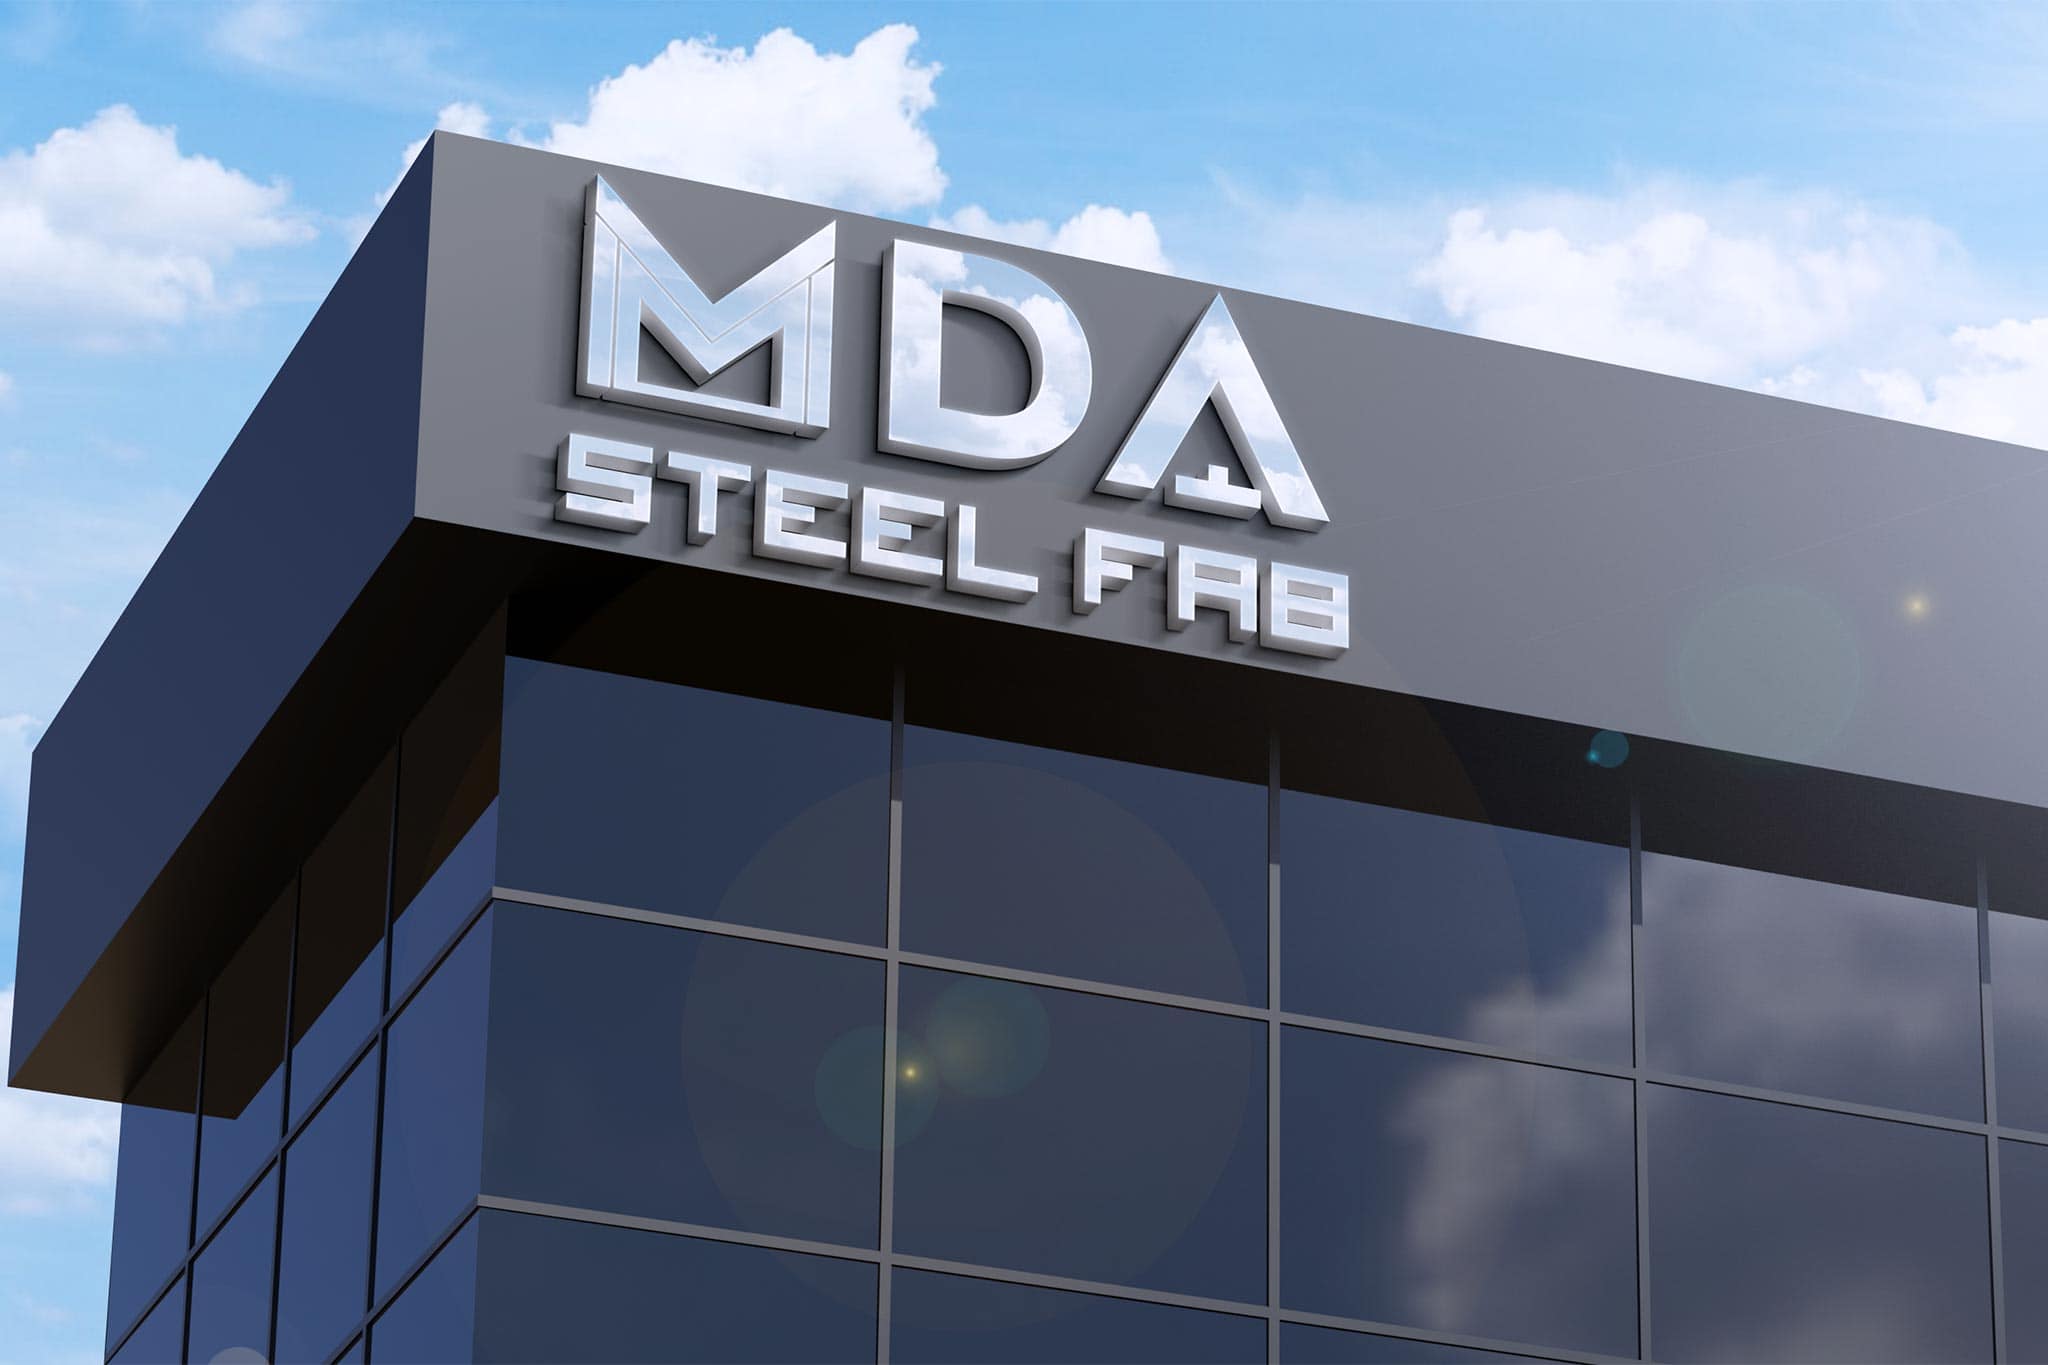 MDA Steel Fab - Digital Delicate